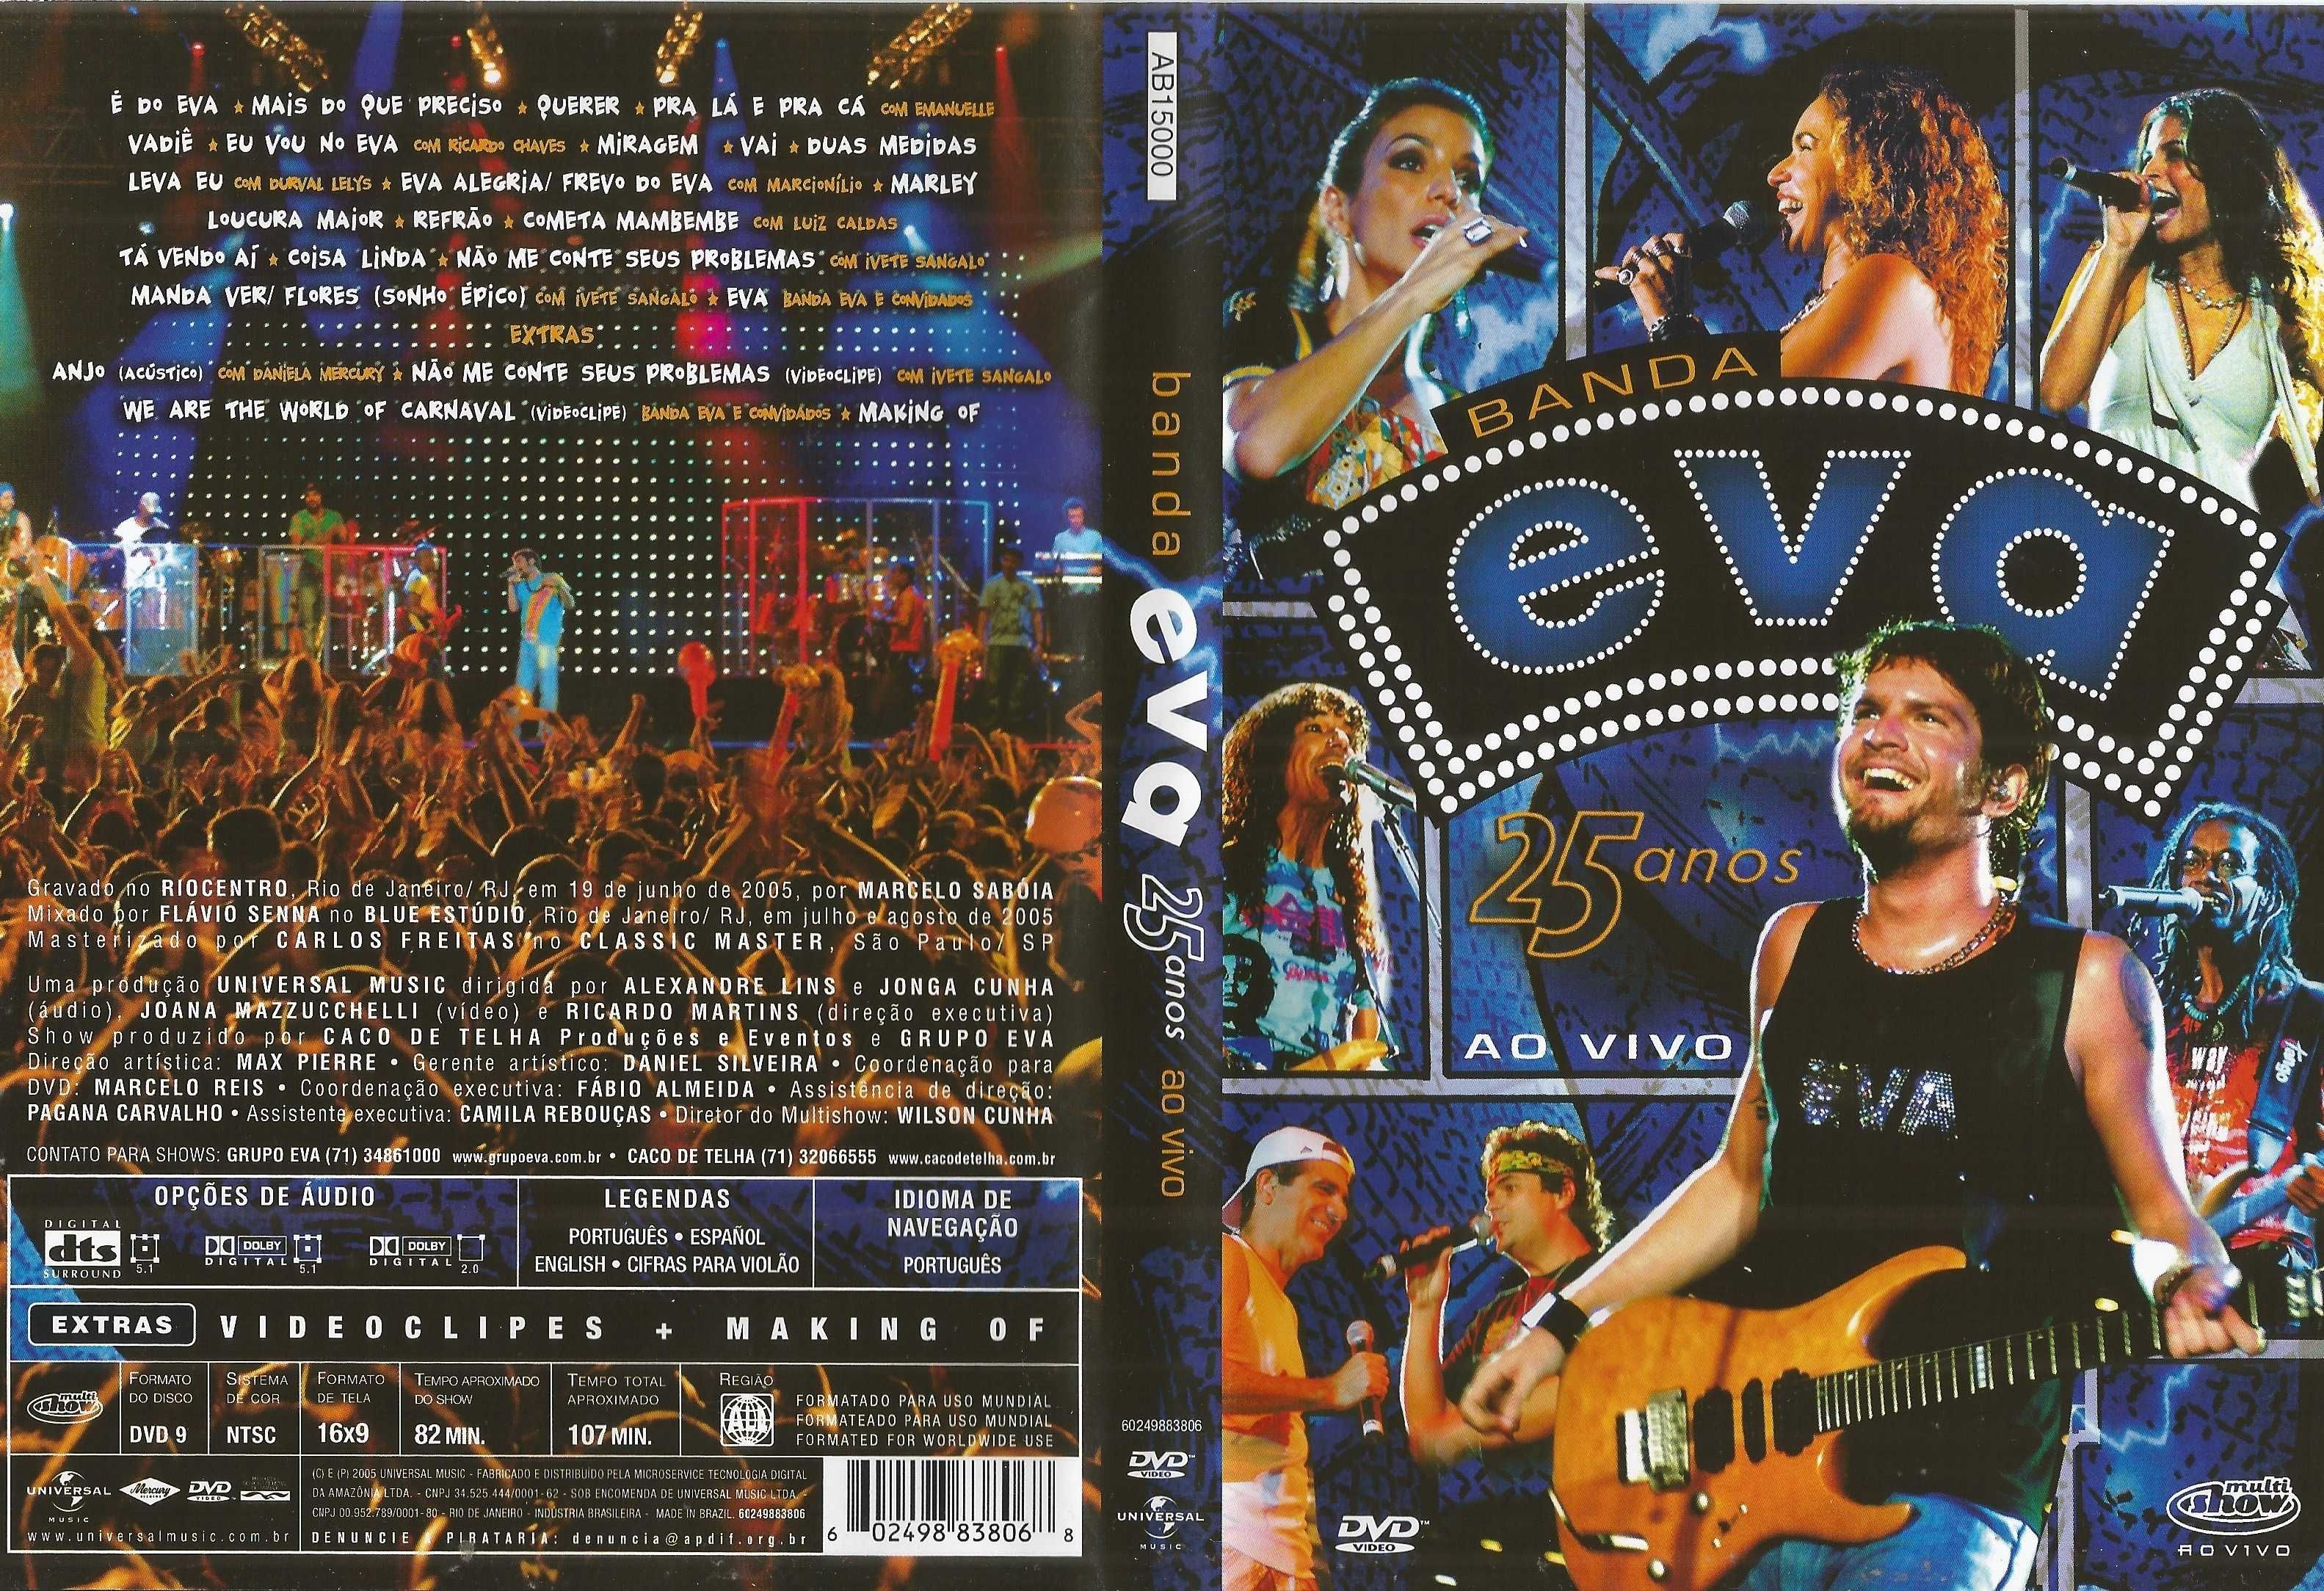 Banda Eva 25 Anos ao Vivo -DVD